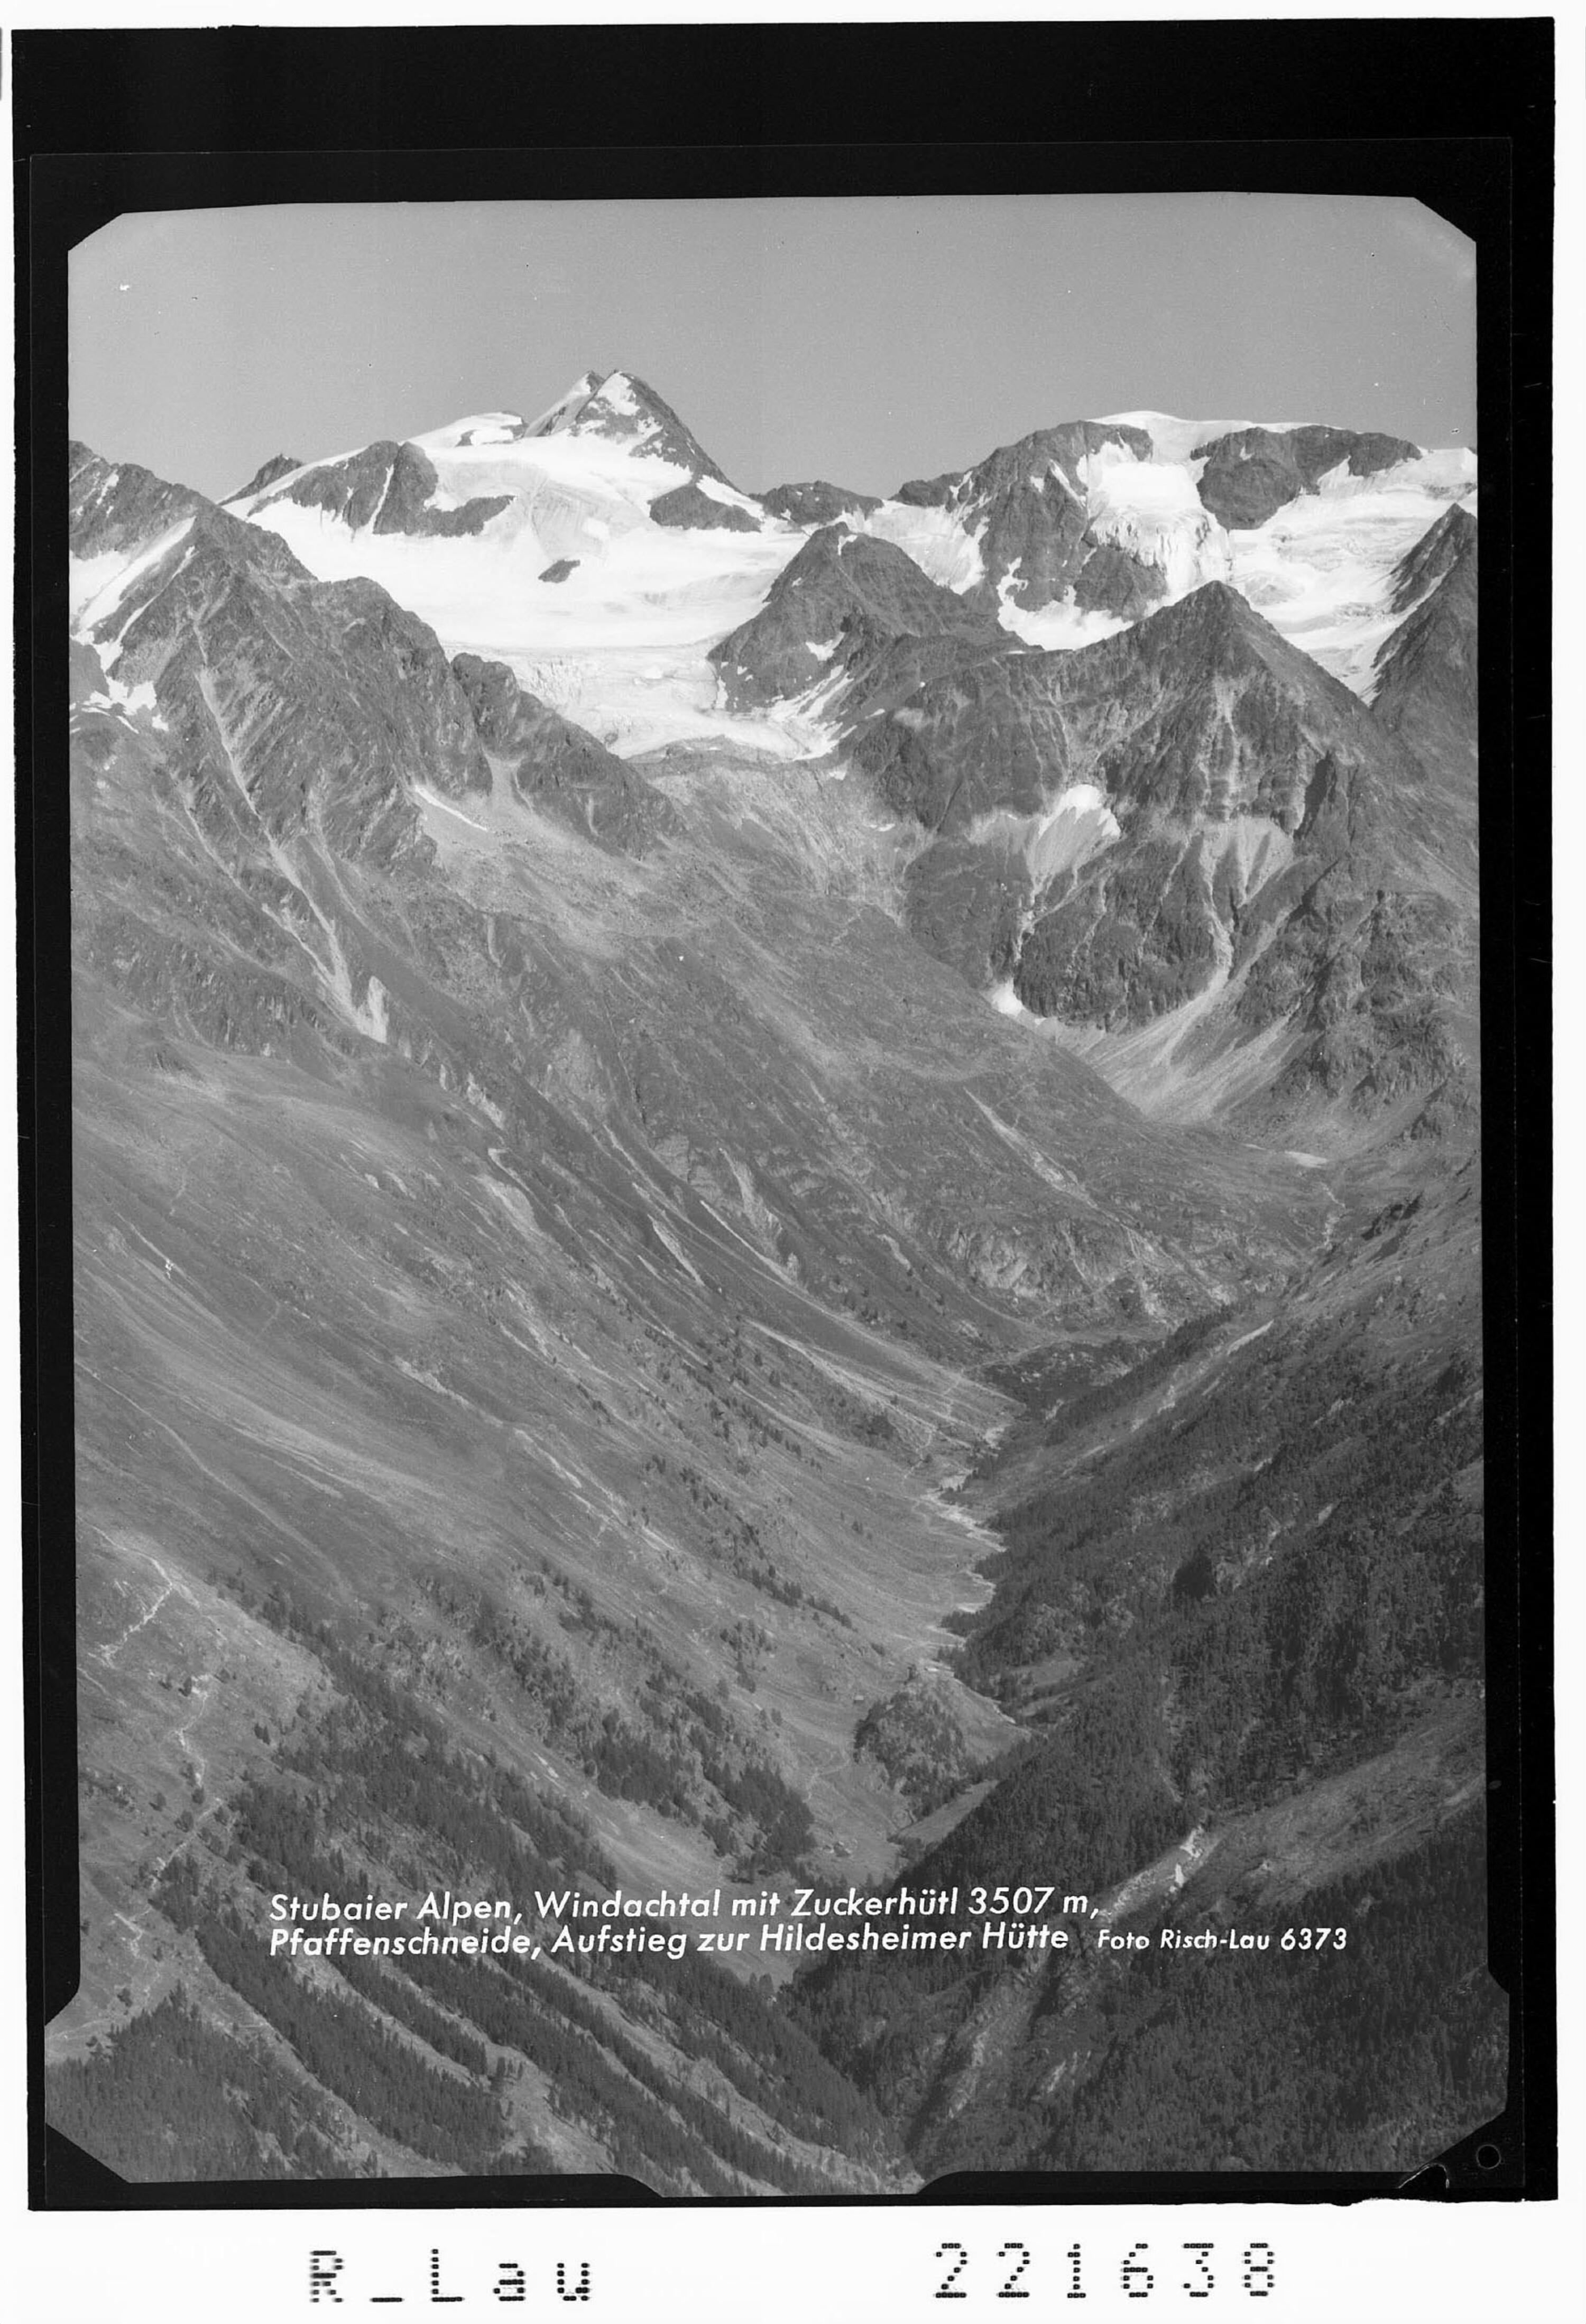 Stubaier Alpen / Windachtal mit Zuckerhütl 3507 m - Pfaffenschneid / Aufstieg zur Hildesheimer Hütte></div>


    <hr>
    <div class=